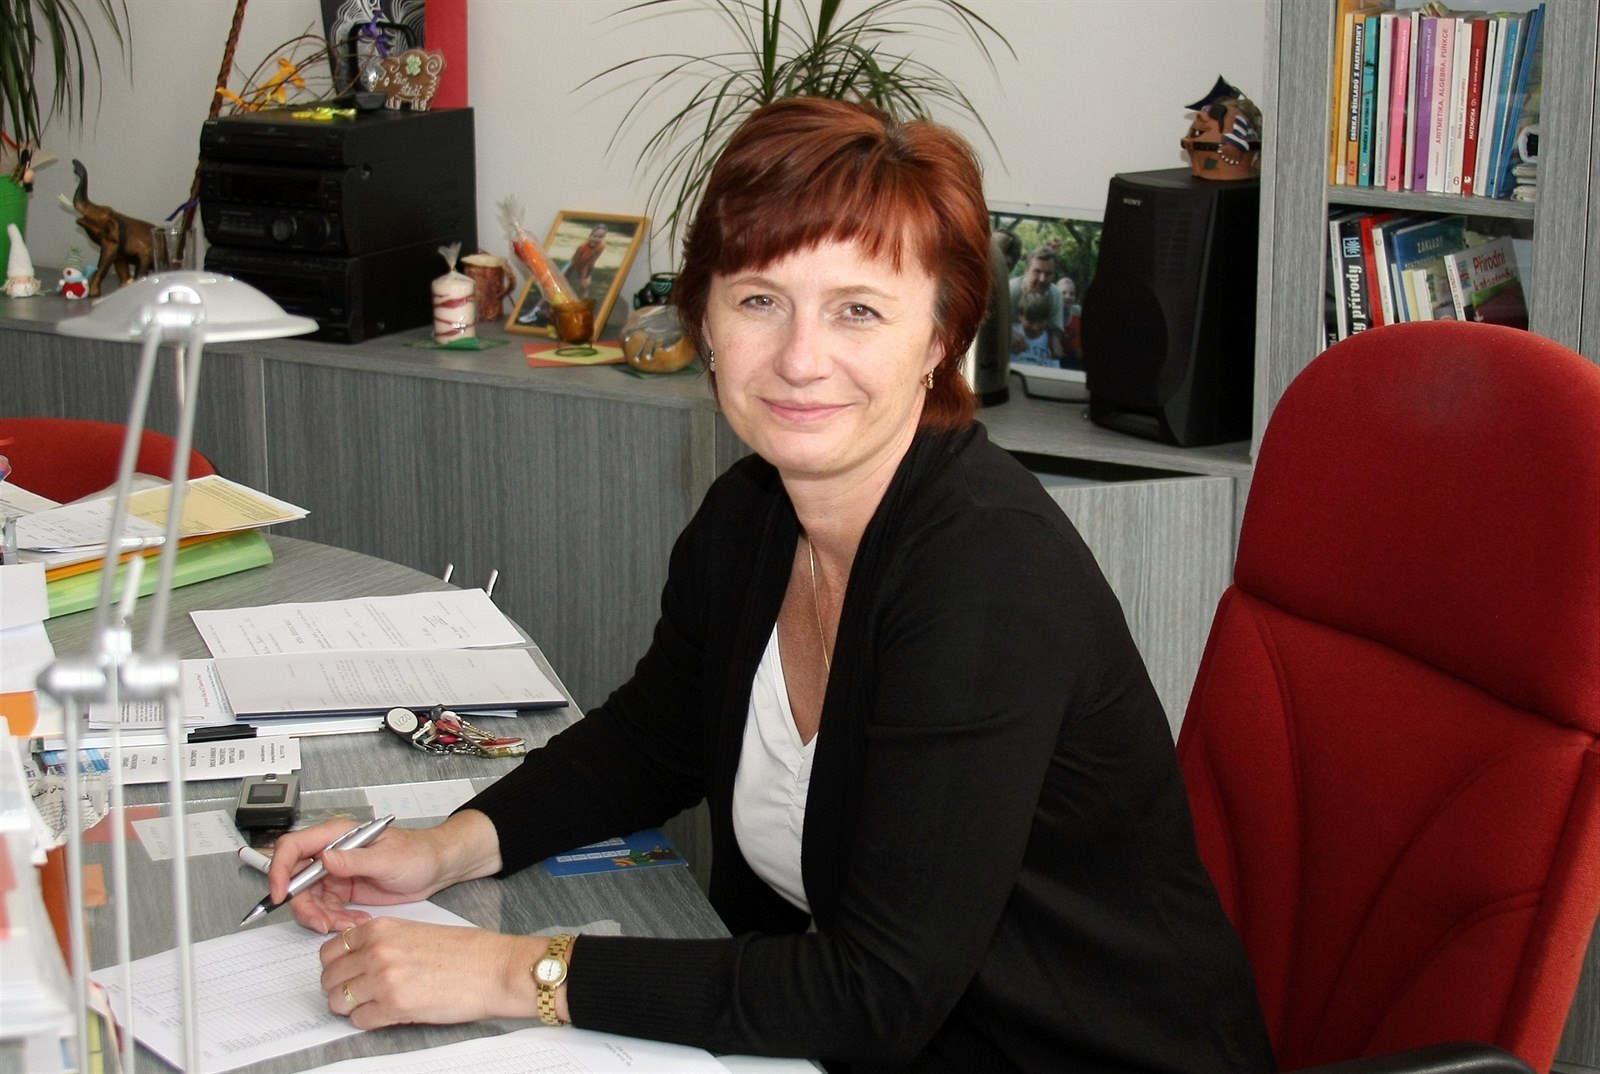 Monika Nezbedová, øeditelka Základní koly Tusarova.;monika nezbedová øeditelka základní koly tusarova kolství sedmièka (22.02.2015)